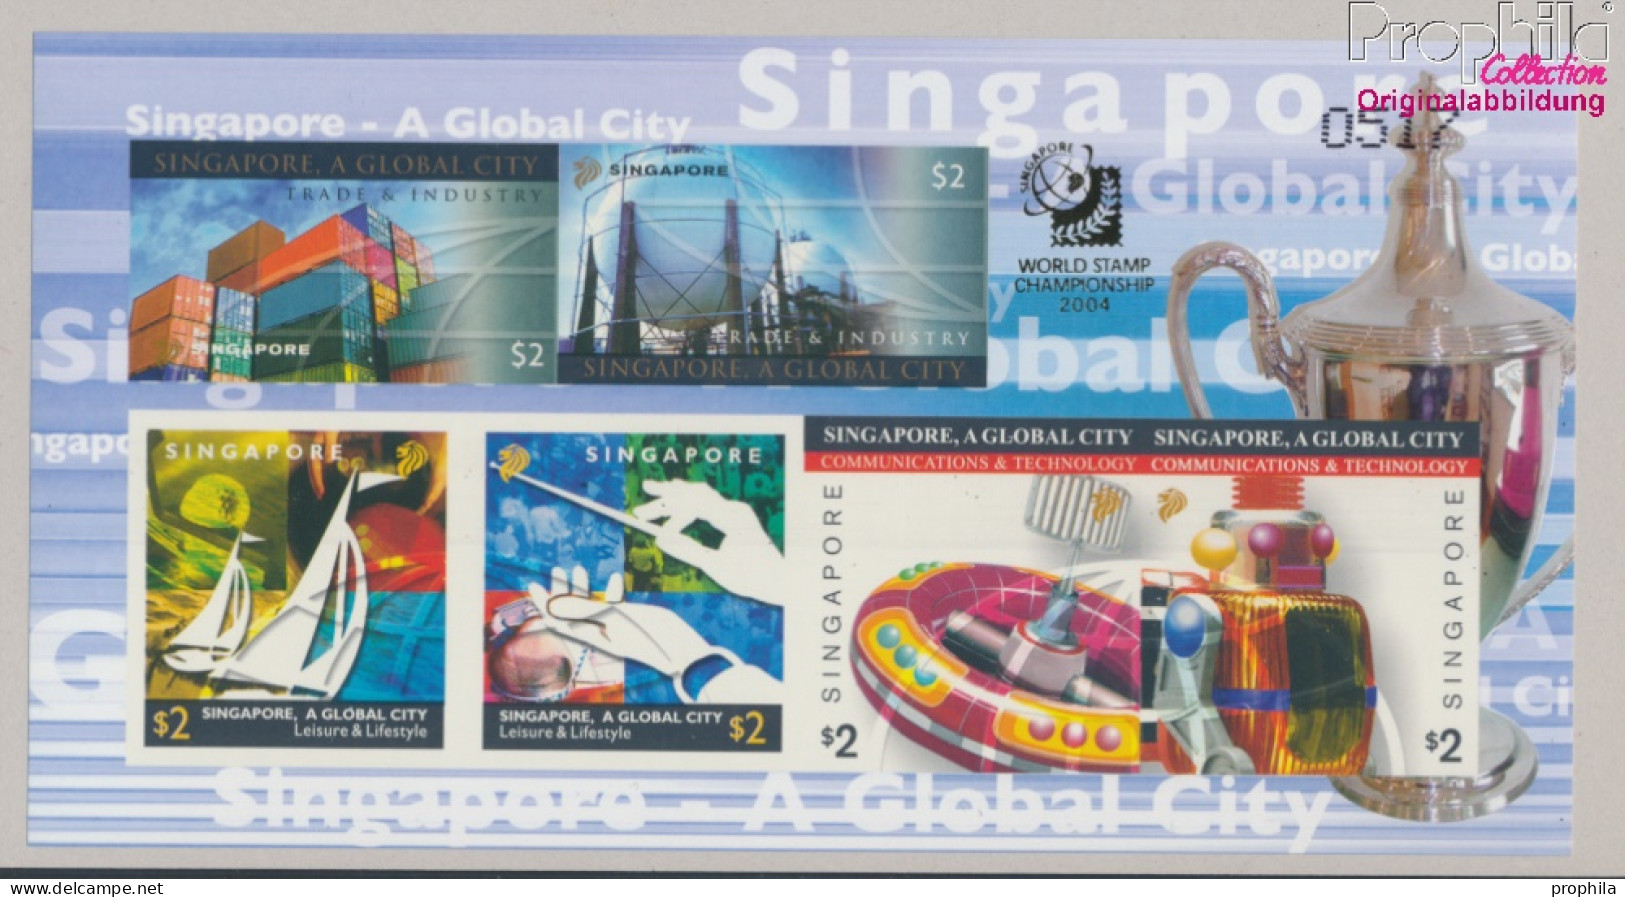 Singapur Block113B (kompl.Ausg.) Ungezähnt Postfrisch 2004 Weltstadt Singapur (10368184 - Singapore (1959-...)